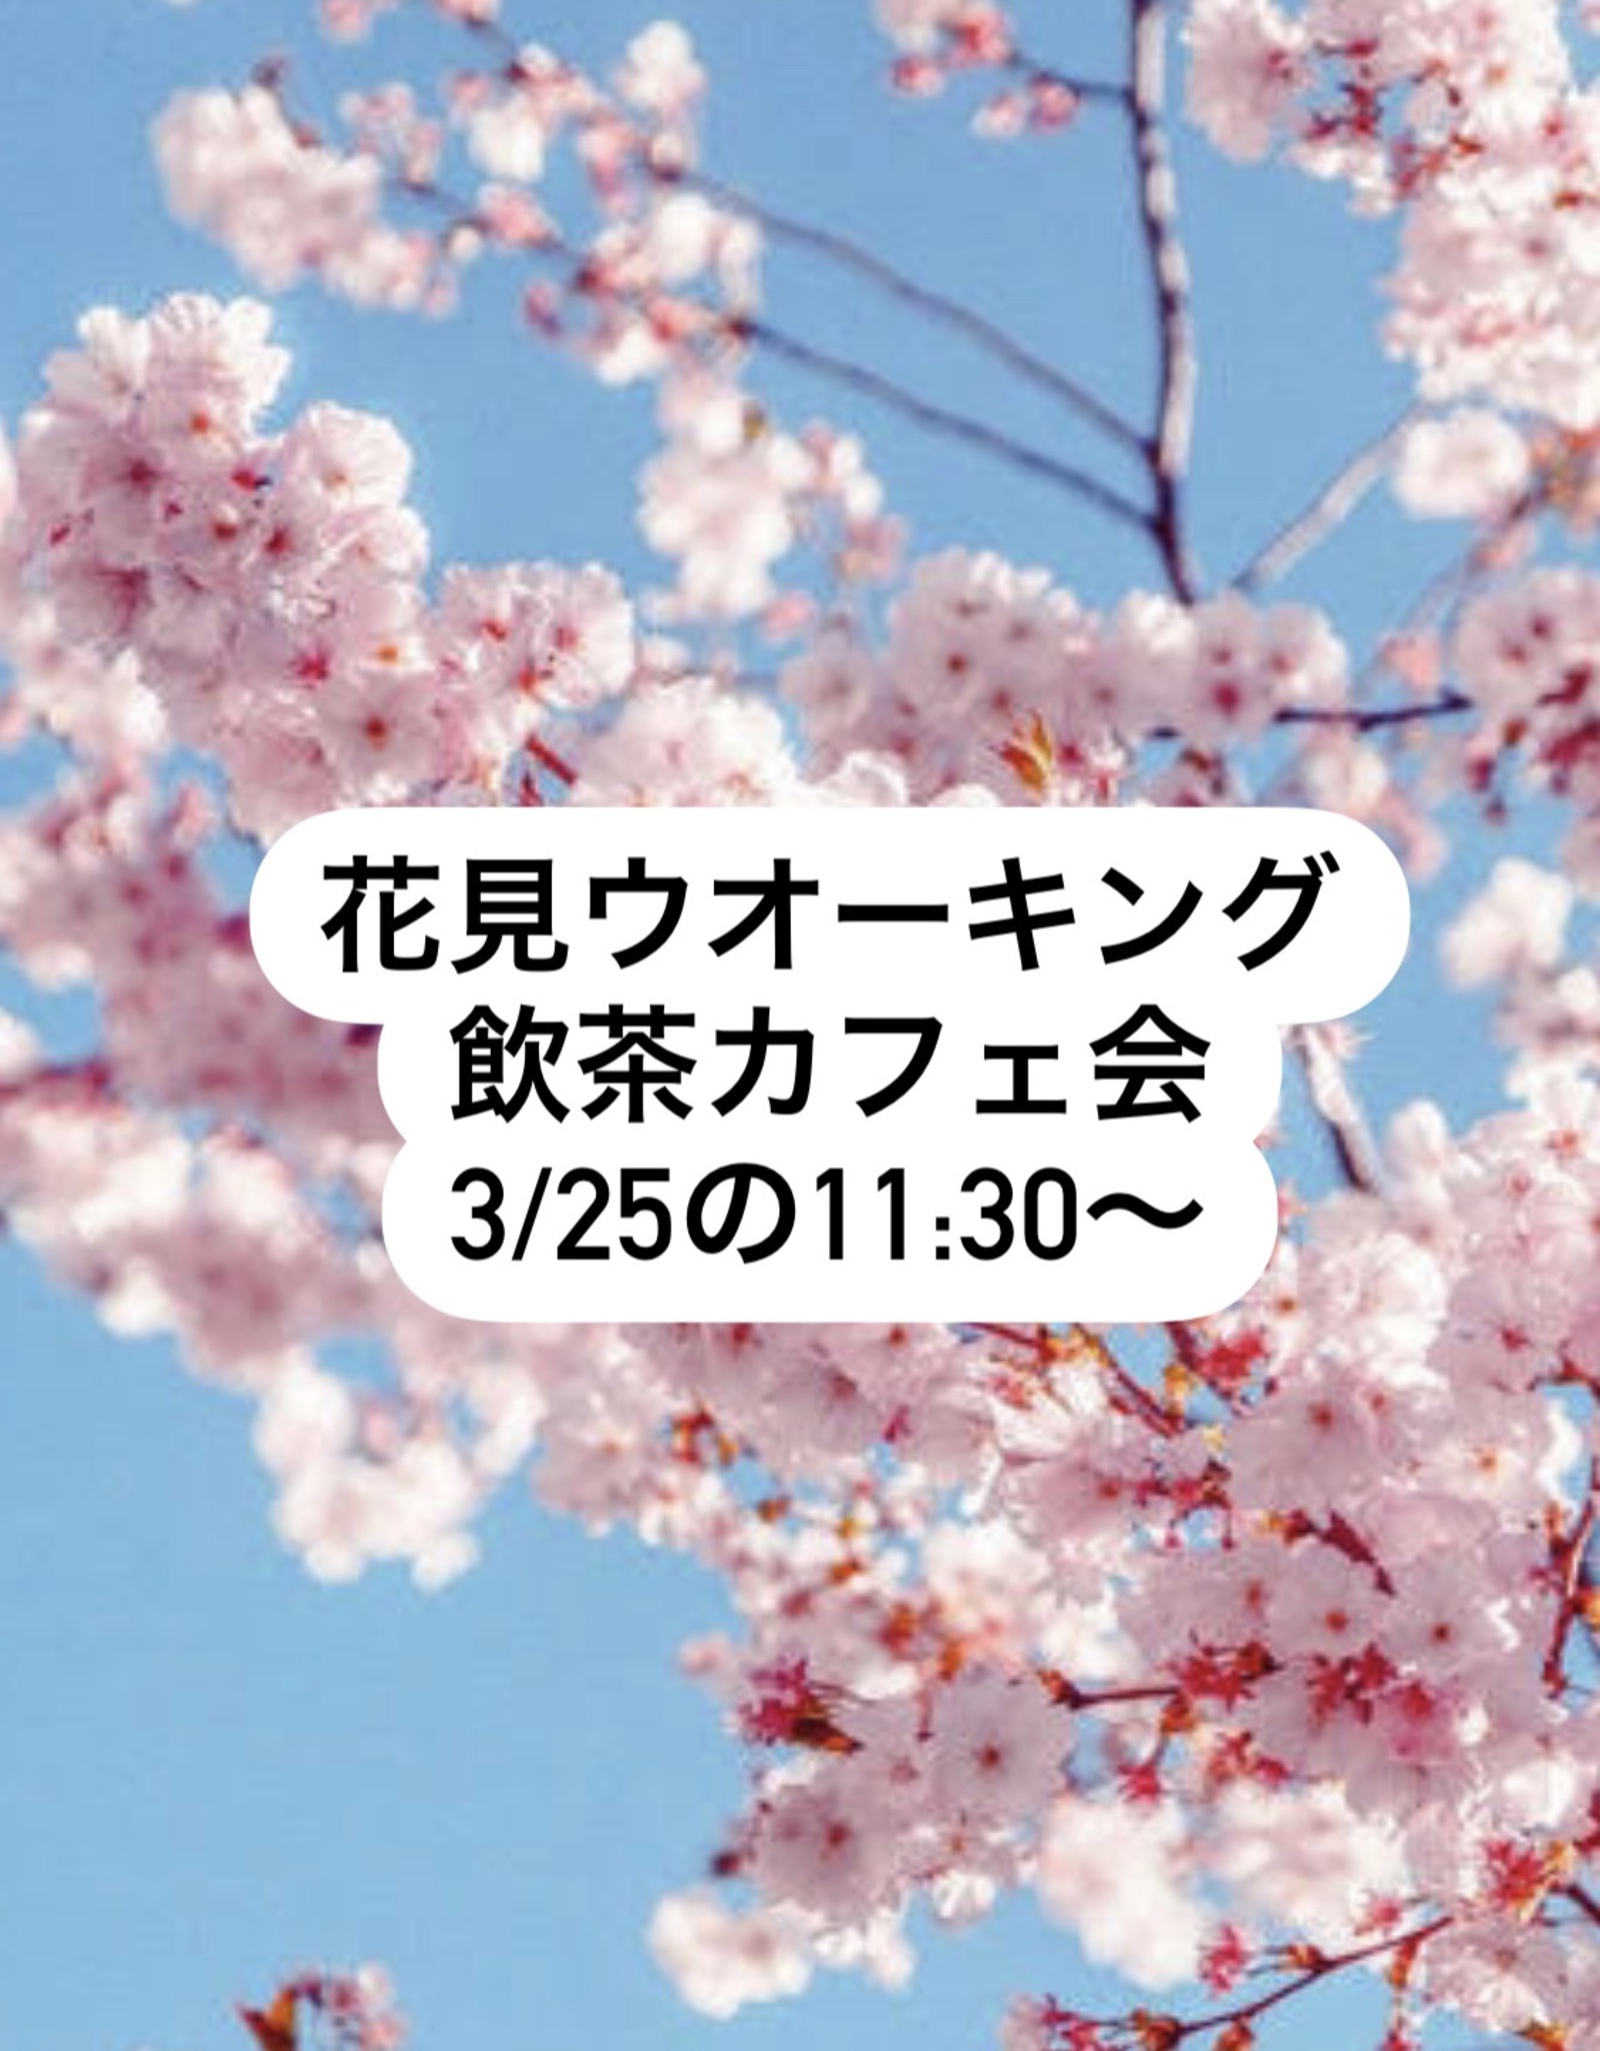 3/25(土)西公園⇄大濠公園の花見カフェ会